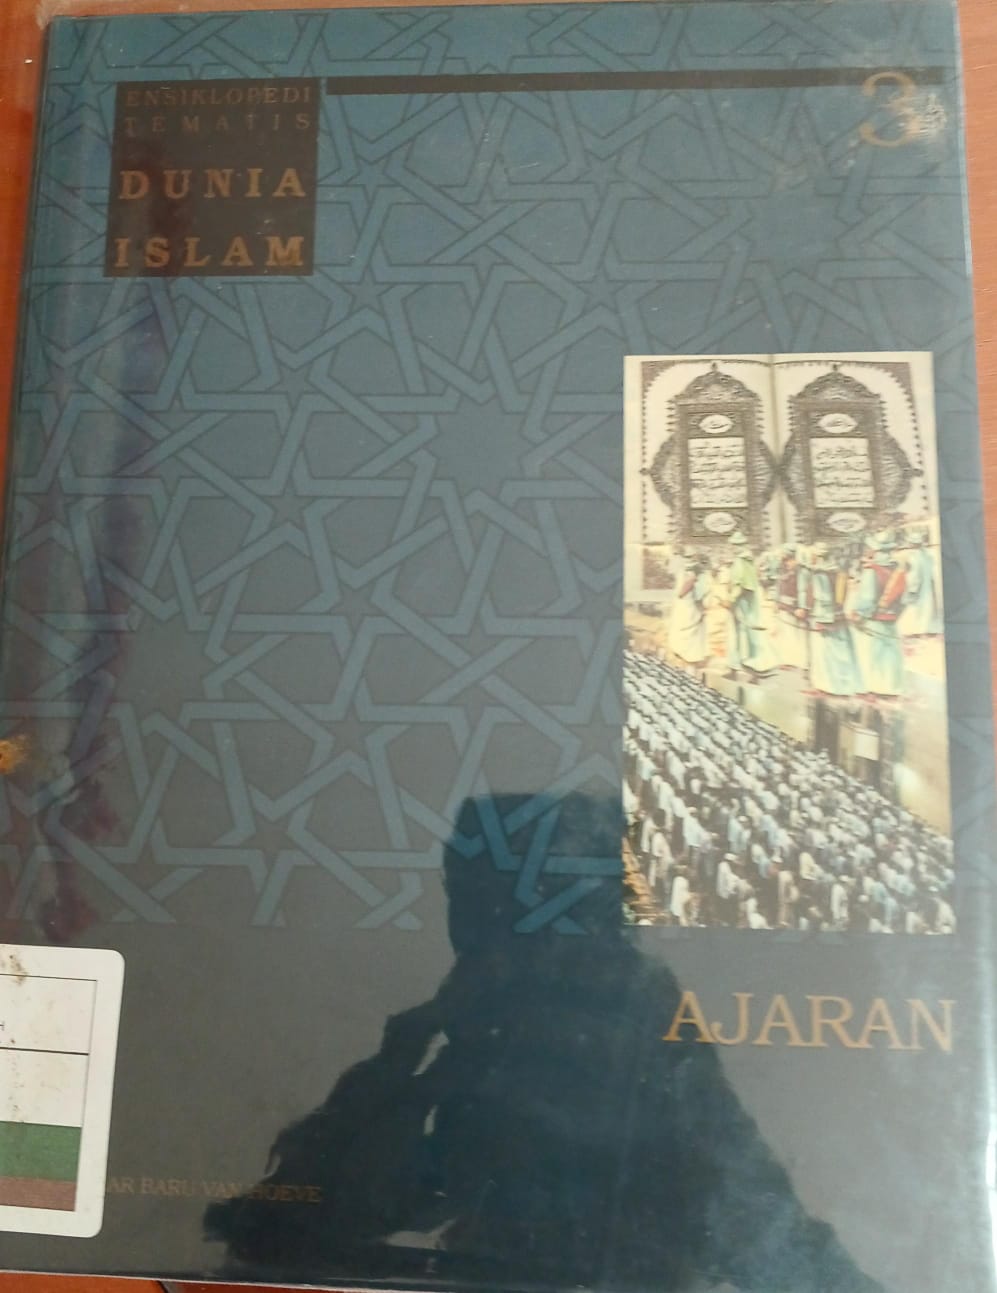 Ensiklopedi tematis dunia islam jilid 3, :  Ajaran